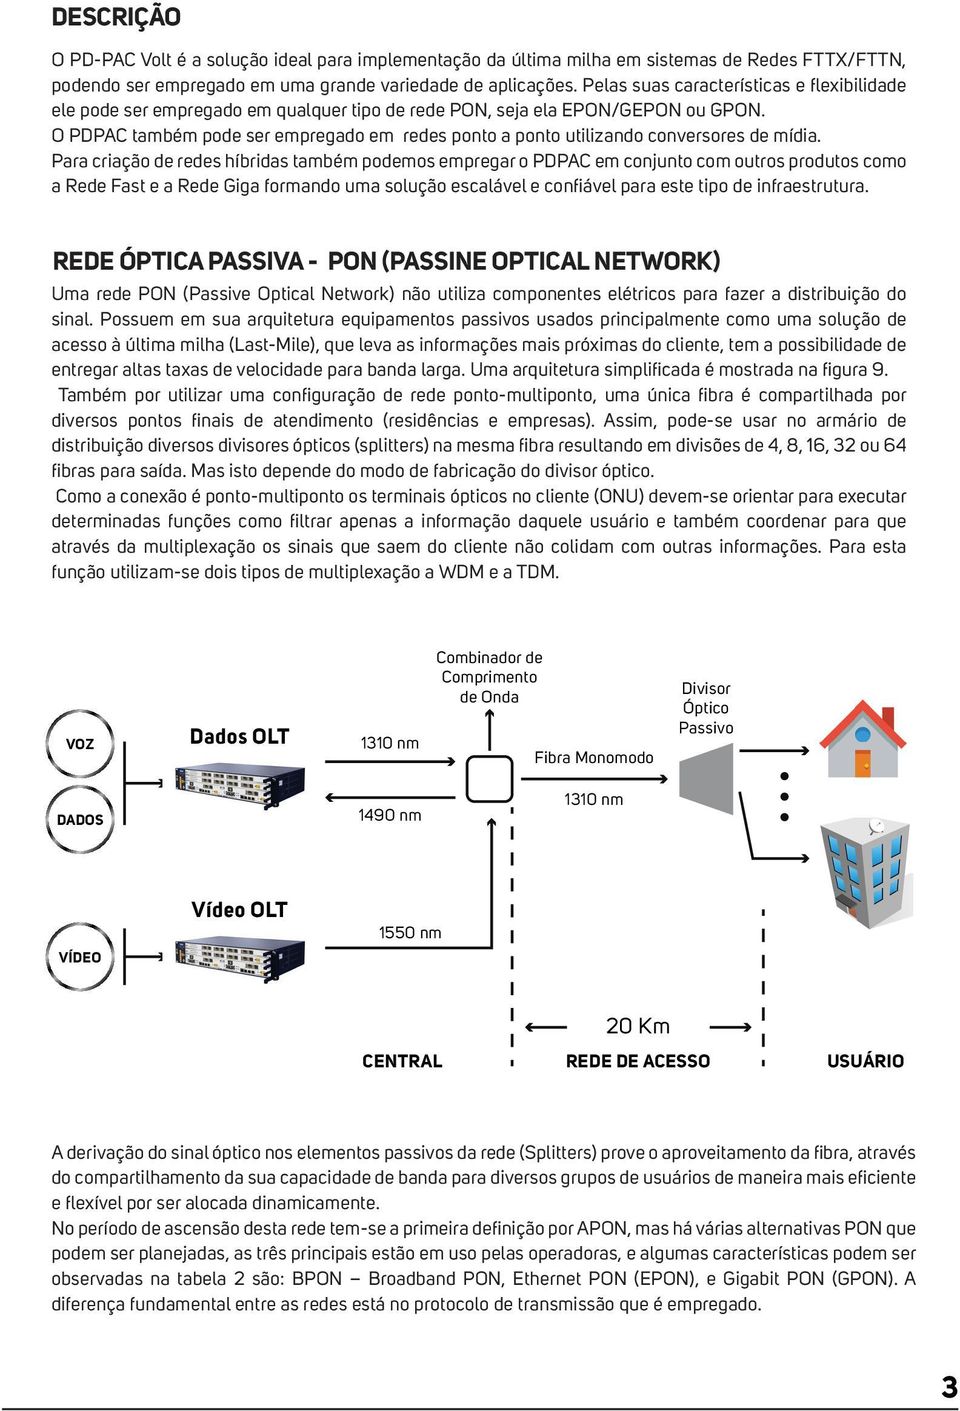 O PDPAC também pode ser empregado em redes ponto a ponto utilizando conversores de mídia.